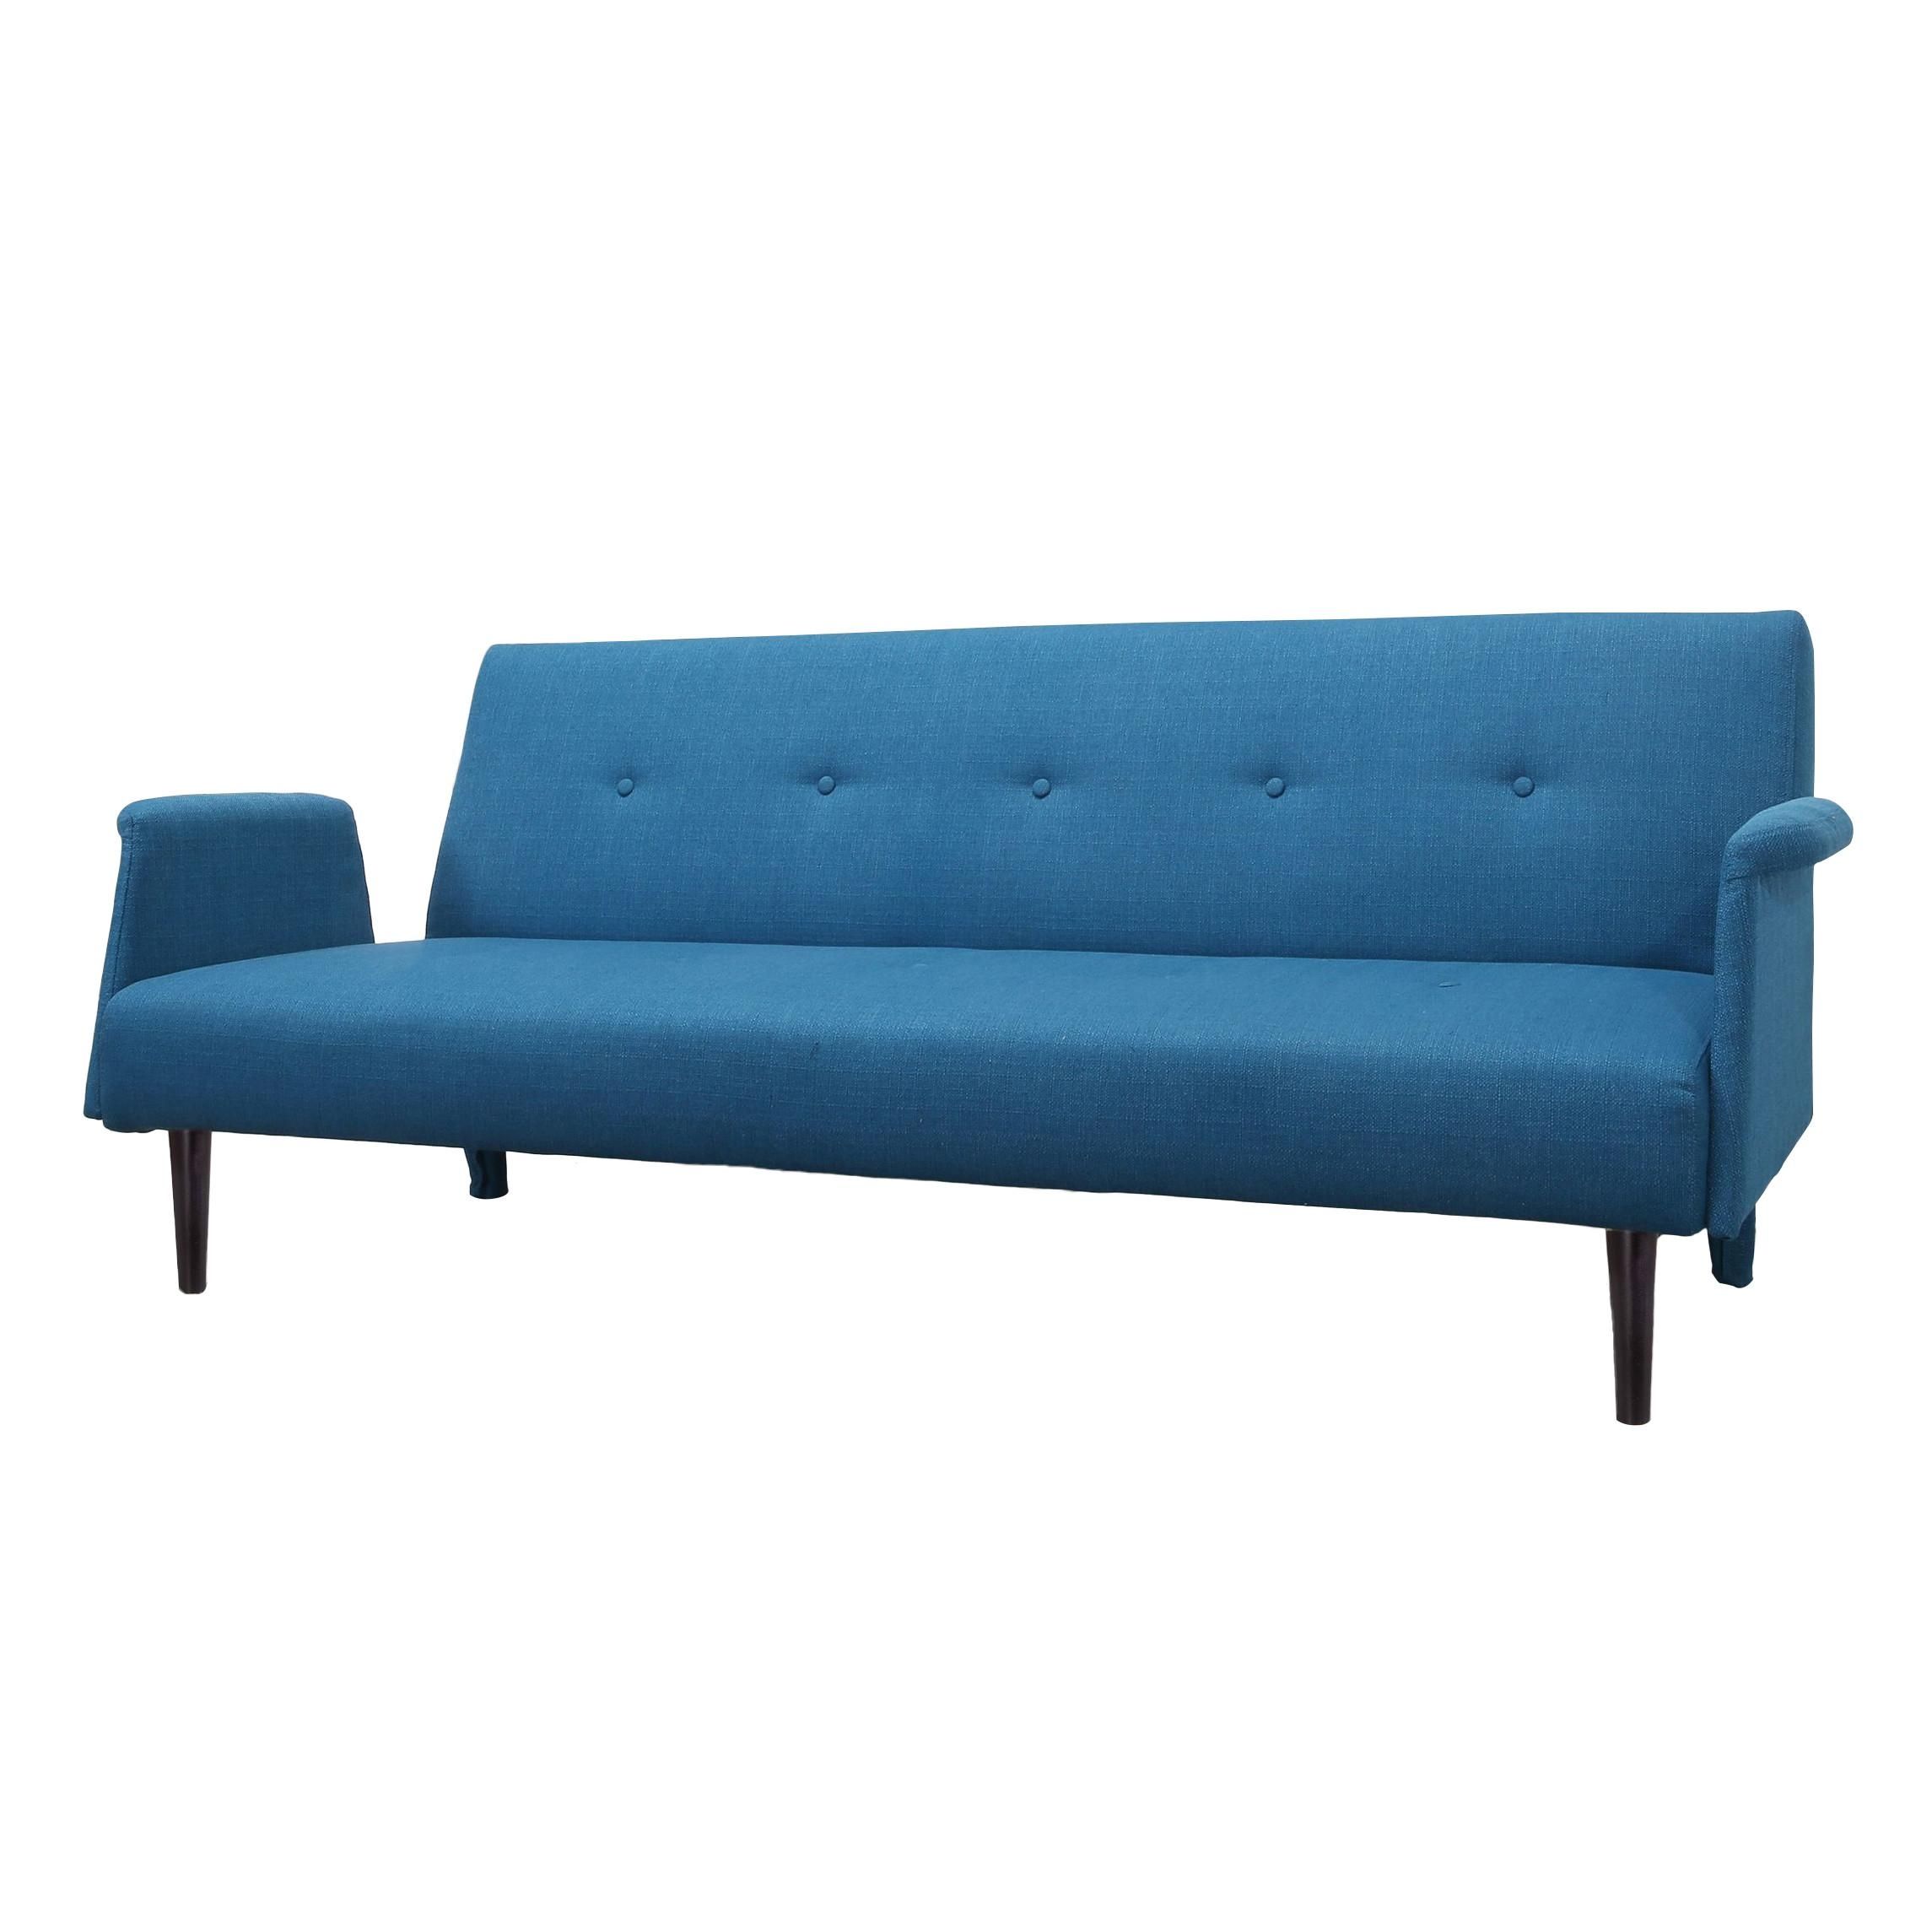 Furniture: Ava Velvet Tufted Sleeper Sofa | Walmart Sofa Sleeper For Ava Tufted Sleeper Sofas (View 14 of 20)